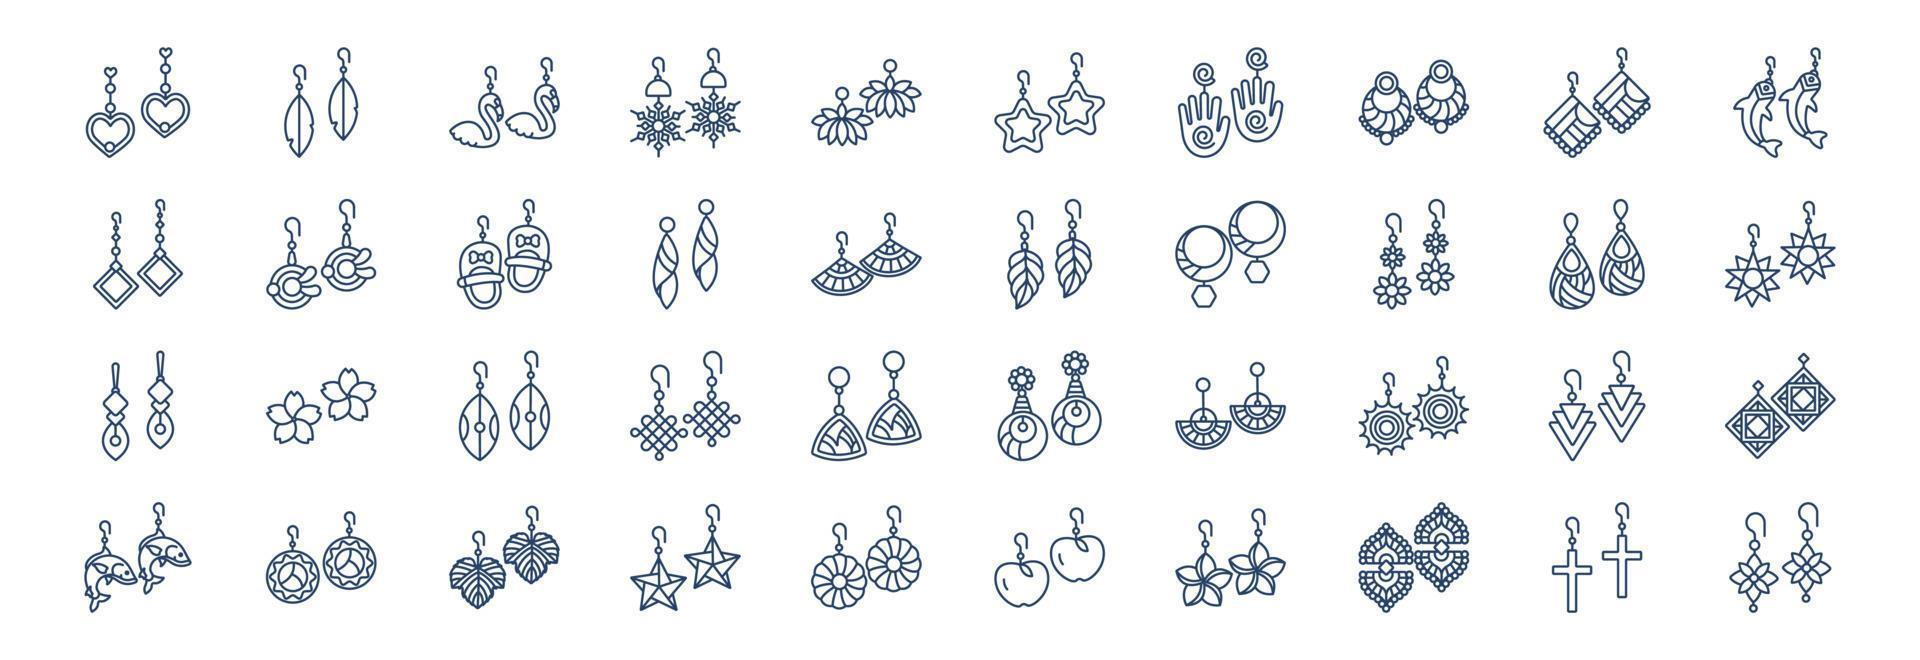 verzameling van pictogrammen verwant naar oorbellen, inclusief pictogrammen Leuk vinden sieraden, geschenk en meer. vector illustraties, pixel perfect reeks